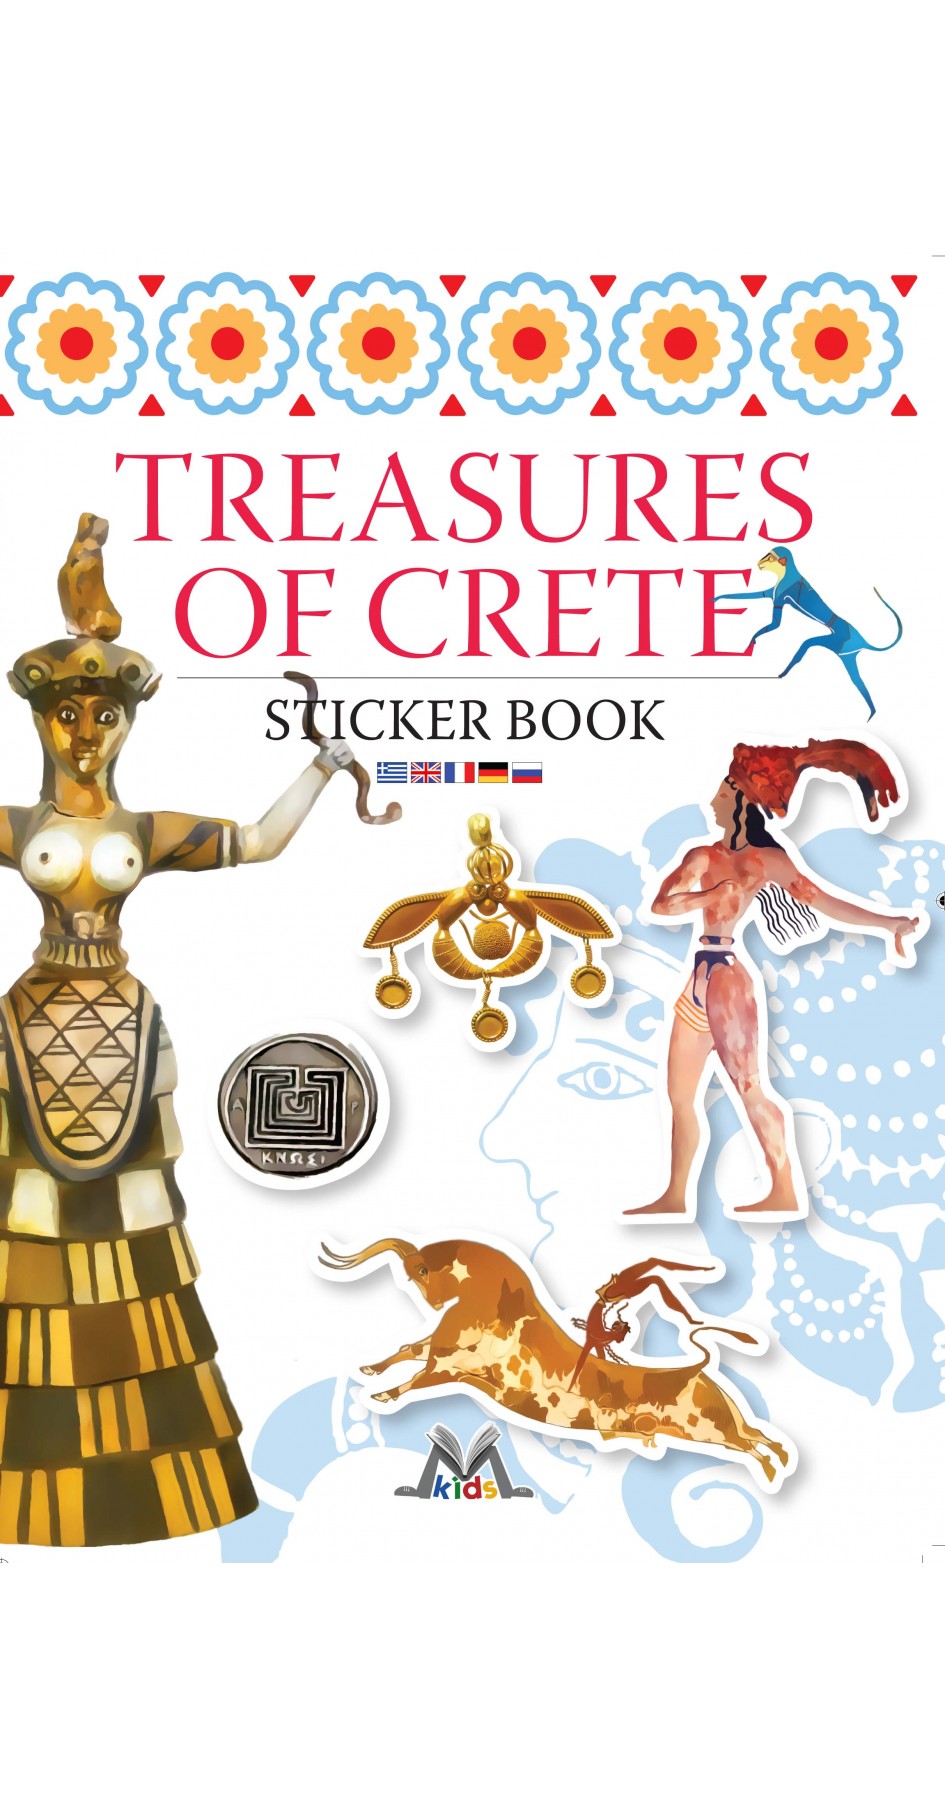 Treasures of Crete, Sticker book